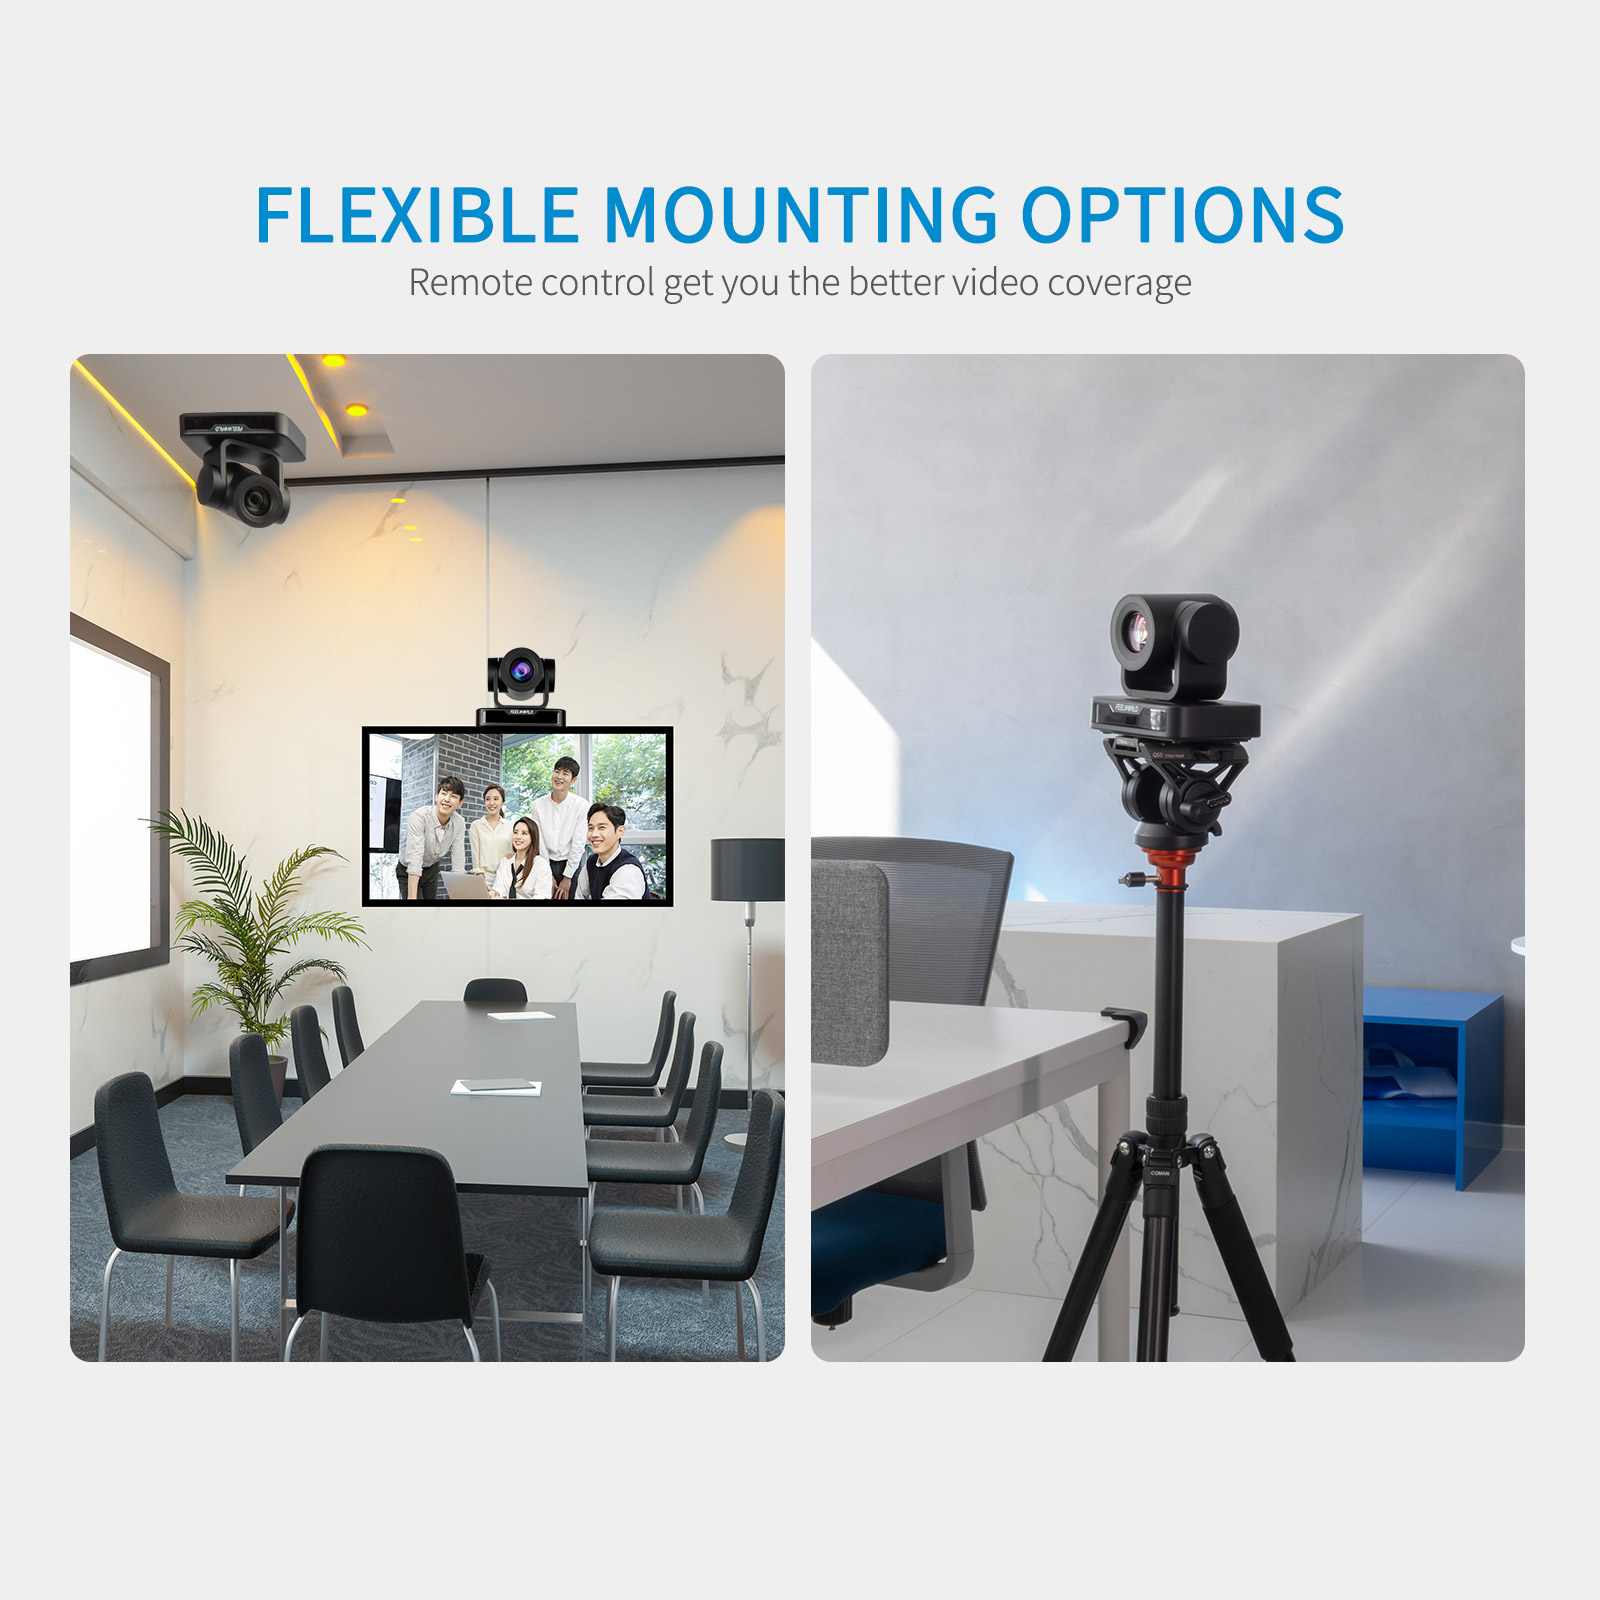 Cámara de videoconferencia de zoom óptico 20X Full HD 1080P USB PTZ Cámara  de conferencias para reuniones de negocios